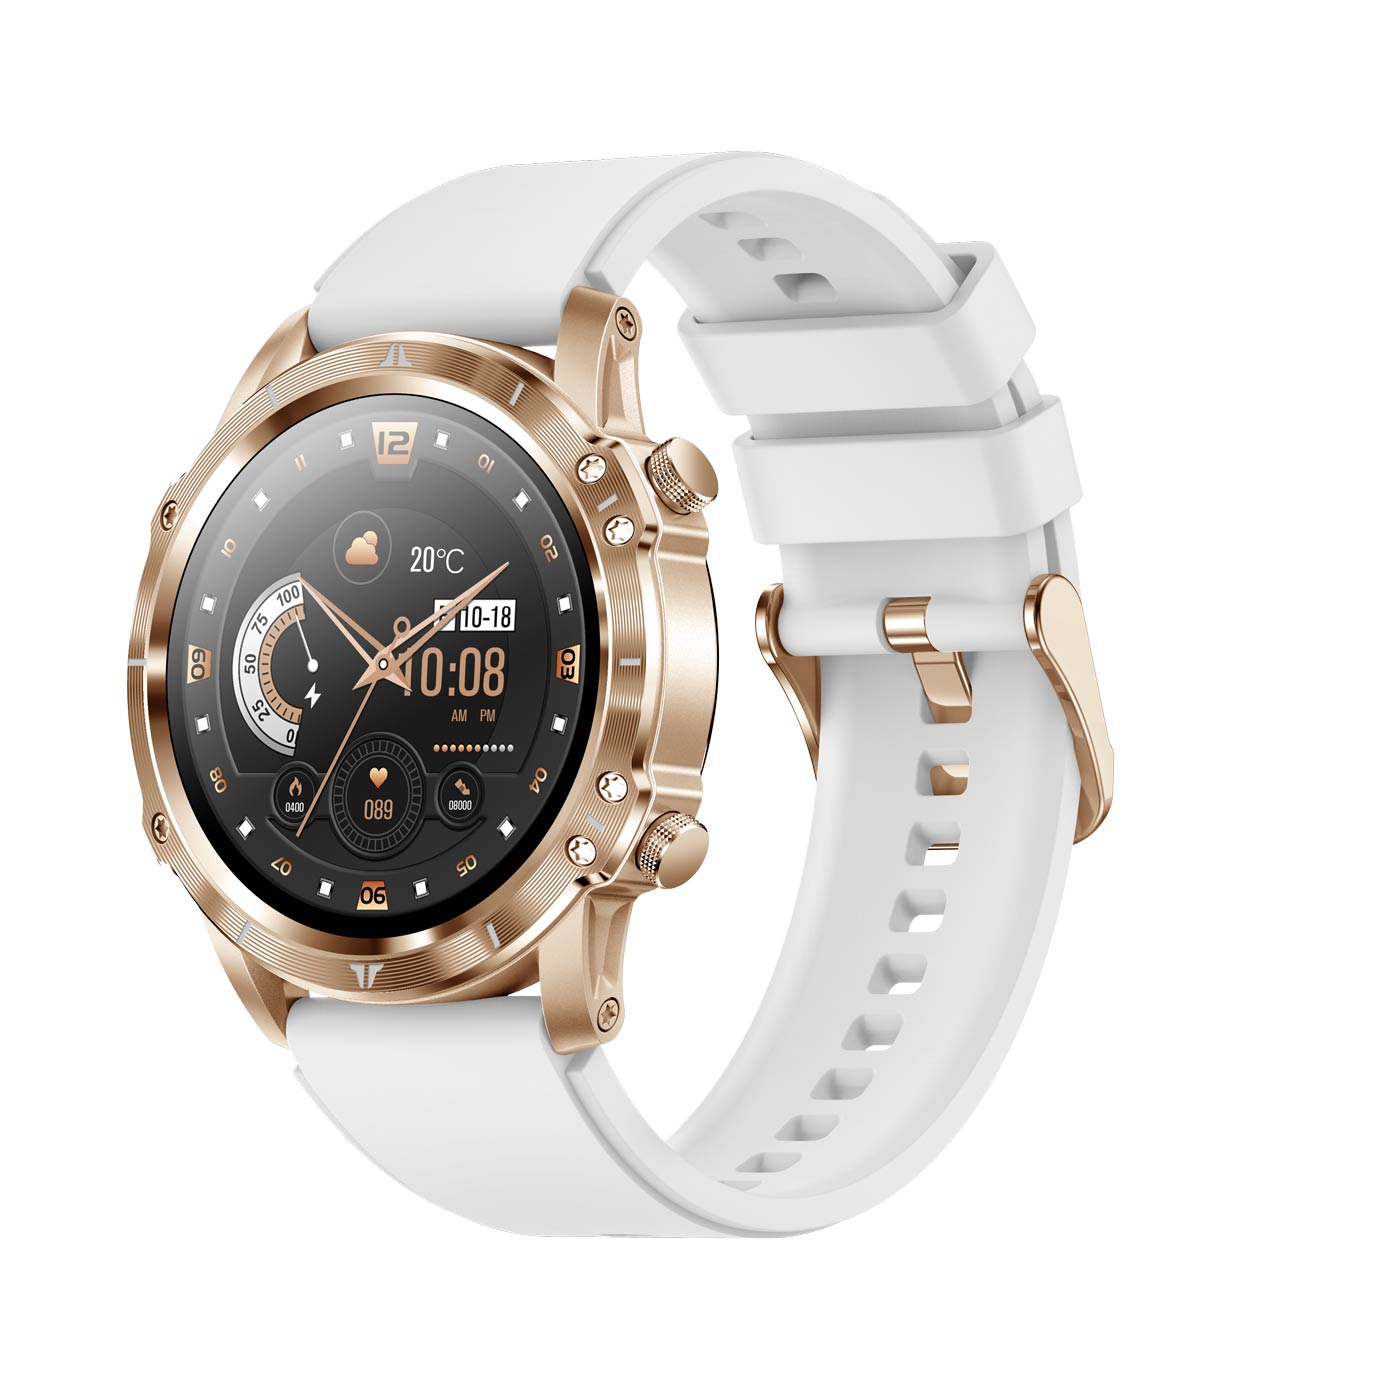 CARNEO Adventure HR+ Smartwatch, gold gold